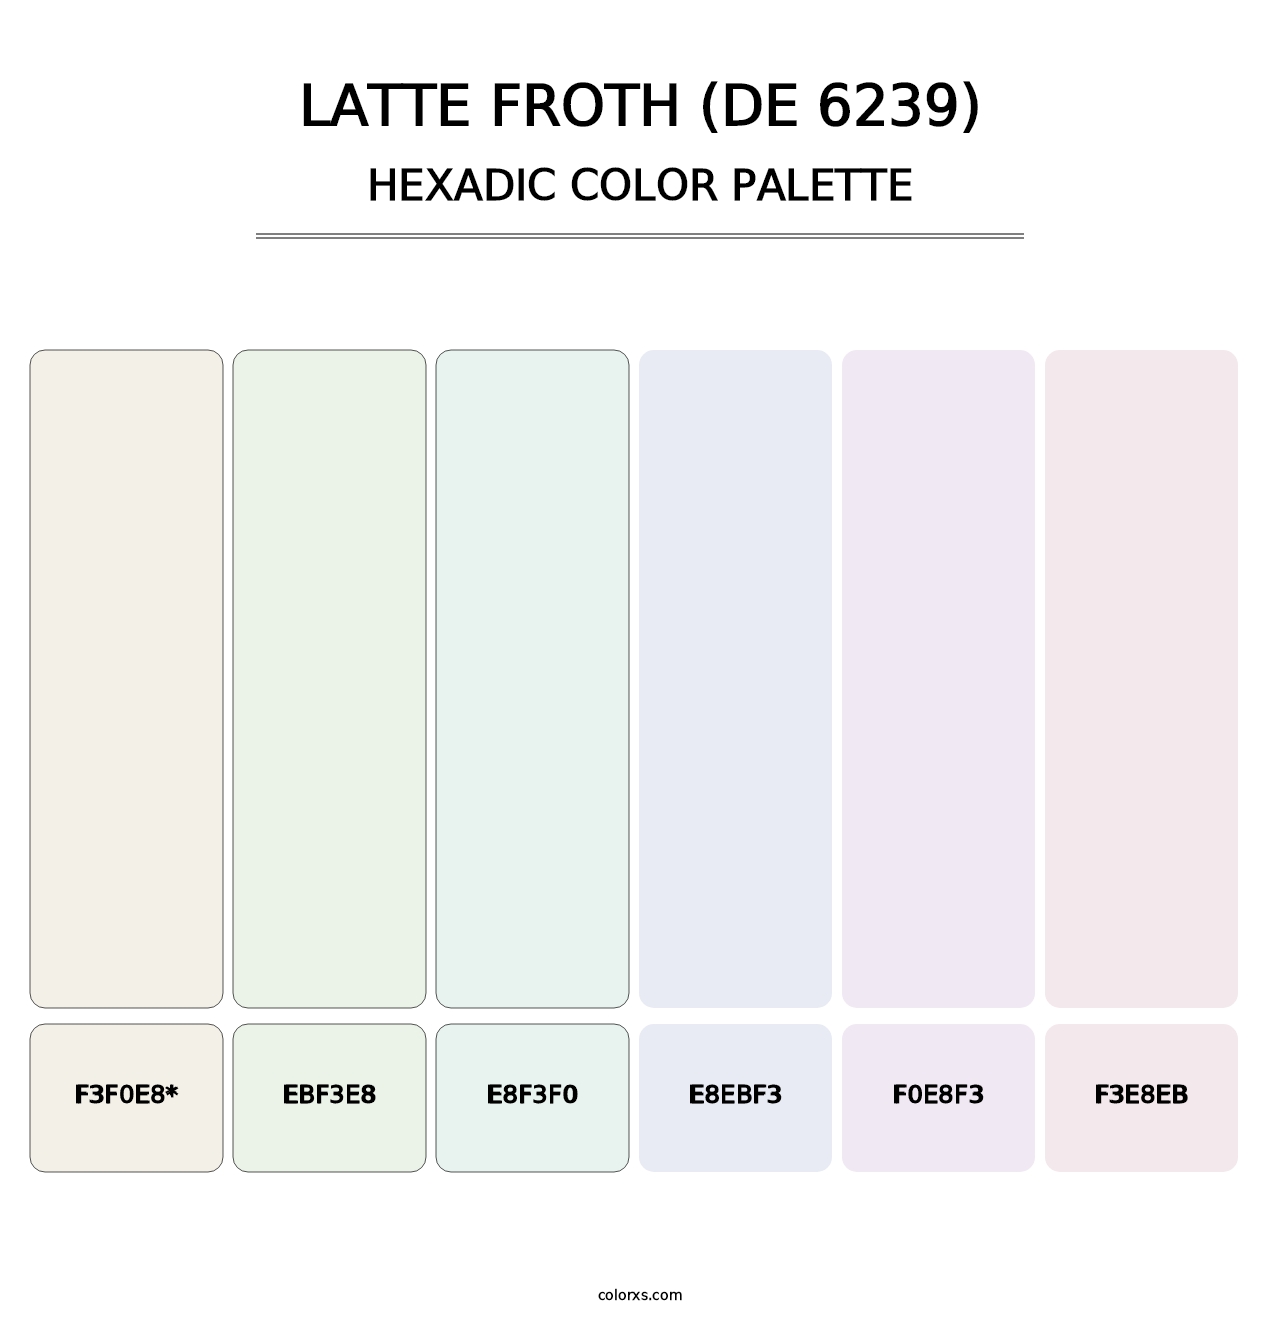 Latte Froth (DE 6239) - Hexadic Color Palette